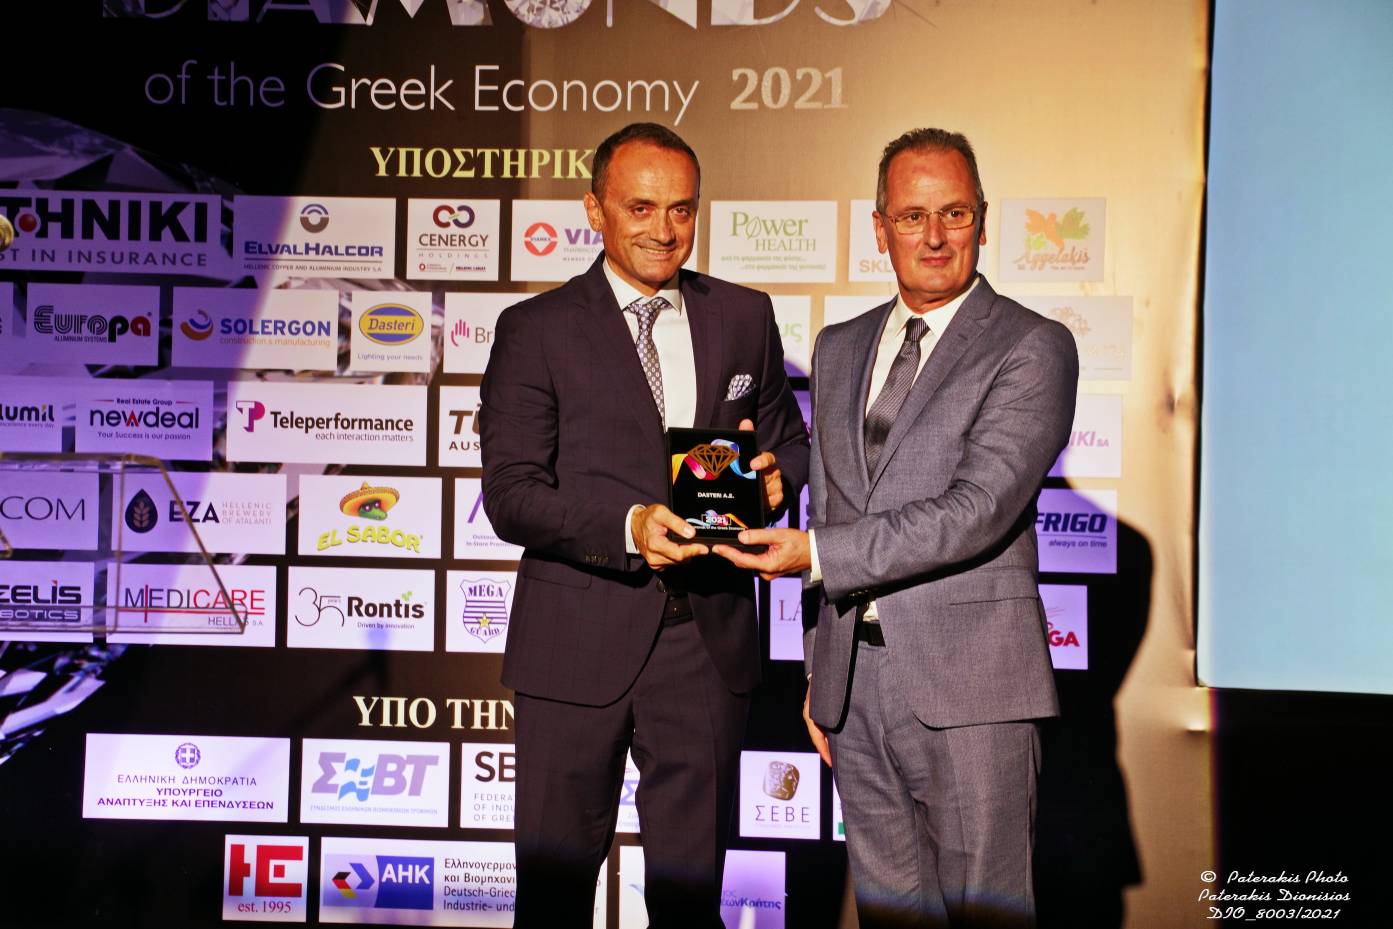 Βράβευση της Dasteri AE – Βραβεία επιχειρηματικής αριστείας Diamonds of the Greek Economy 2021